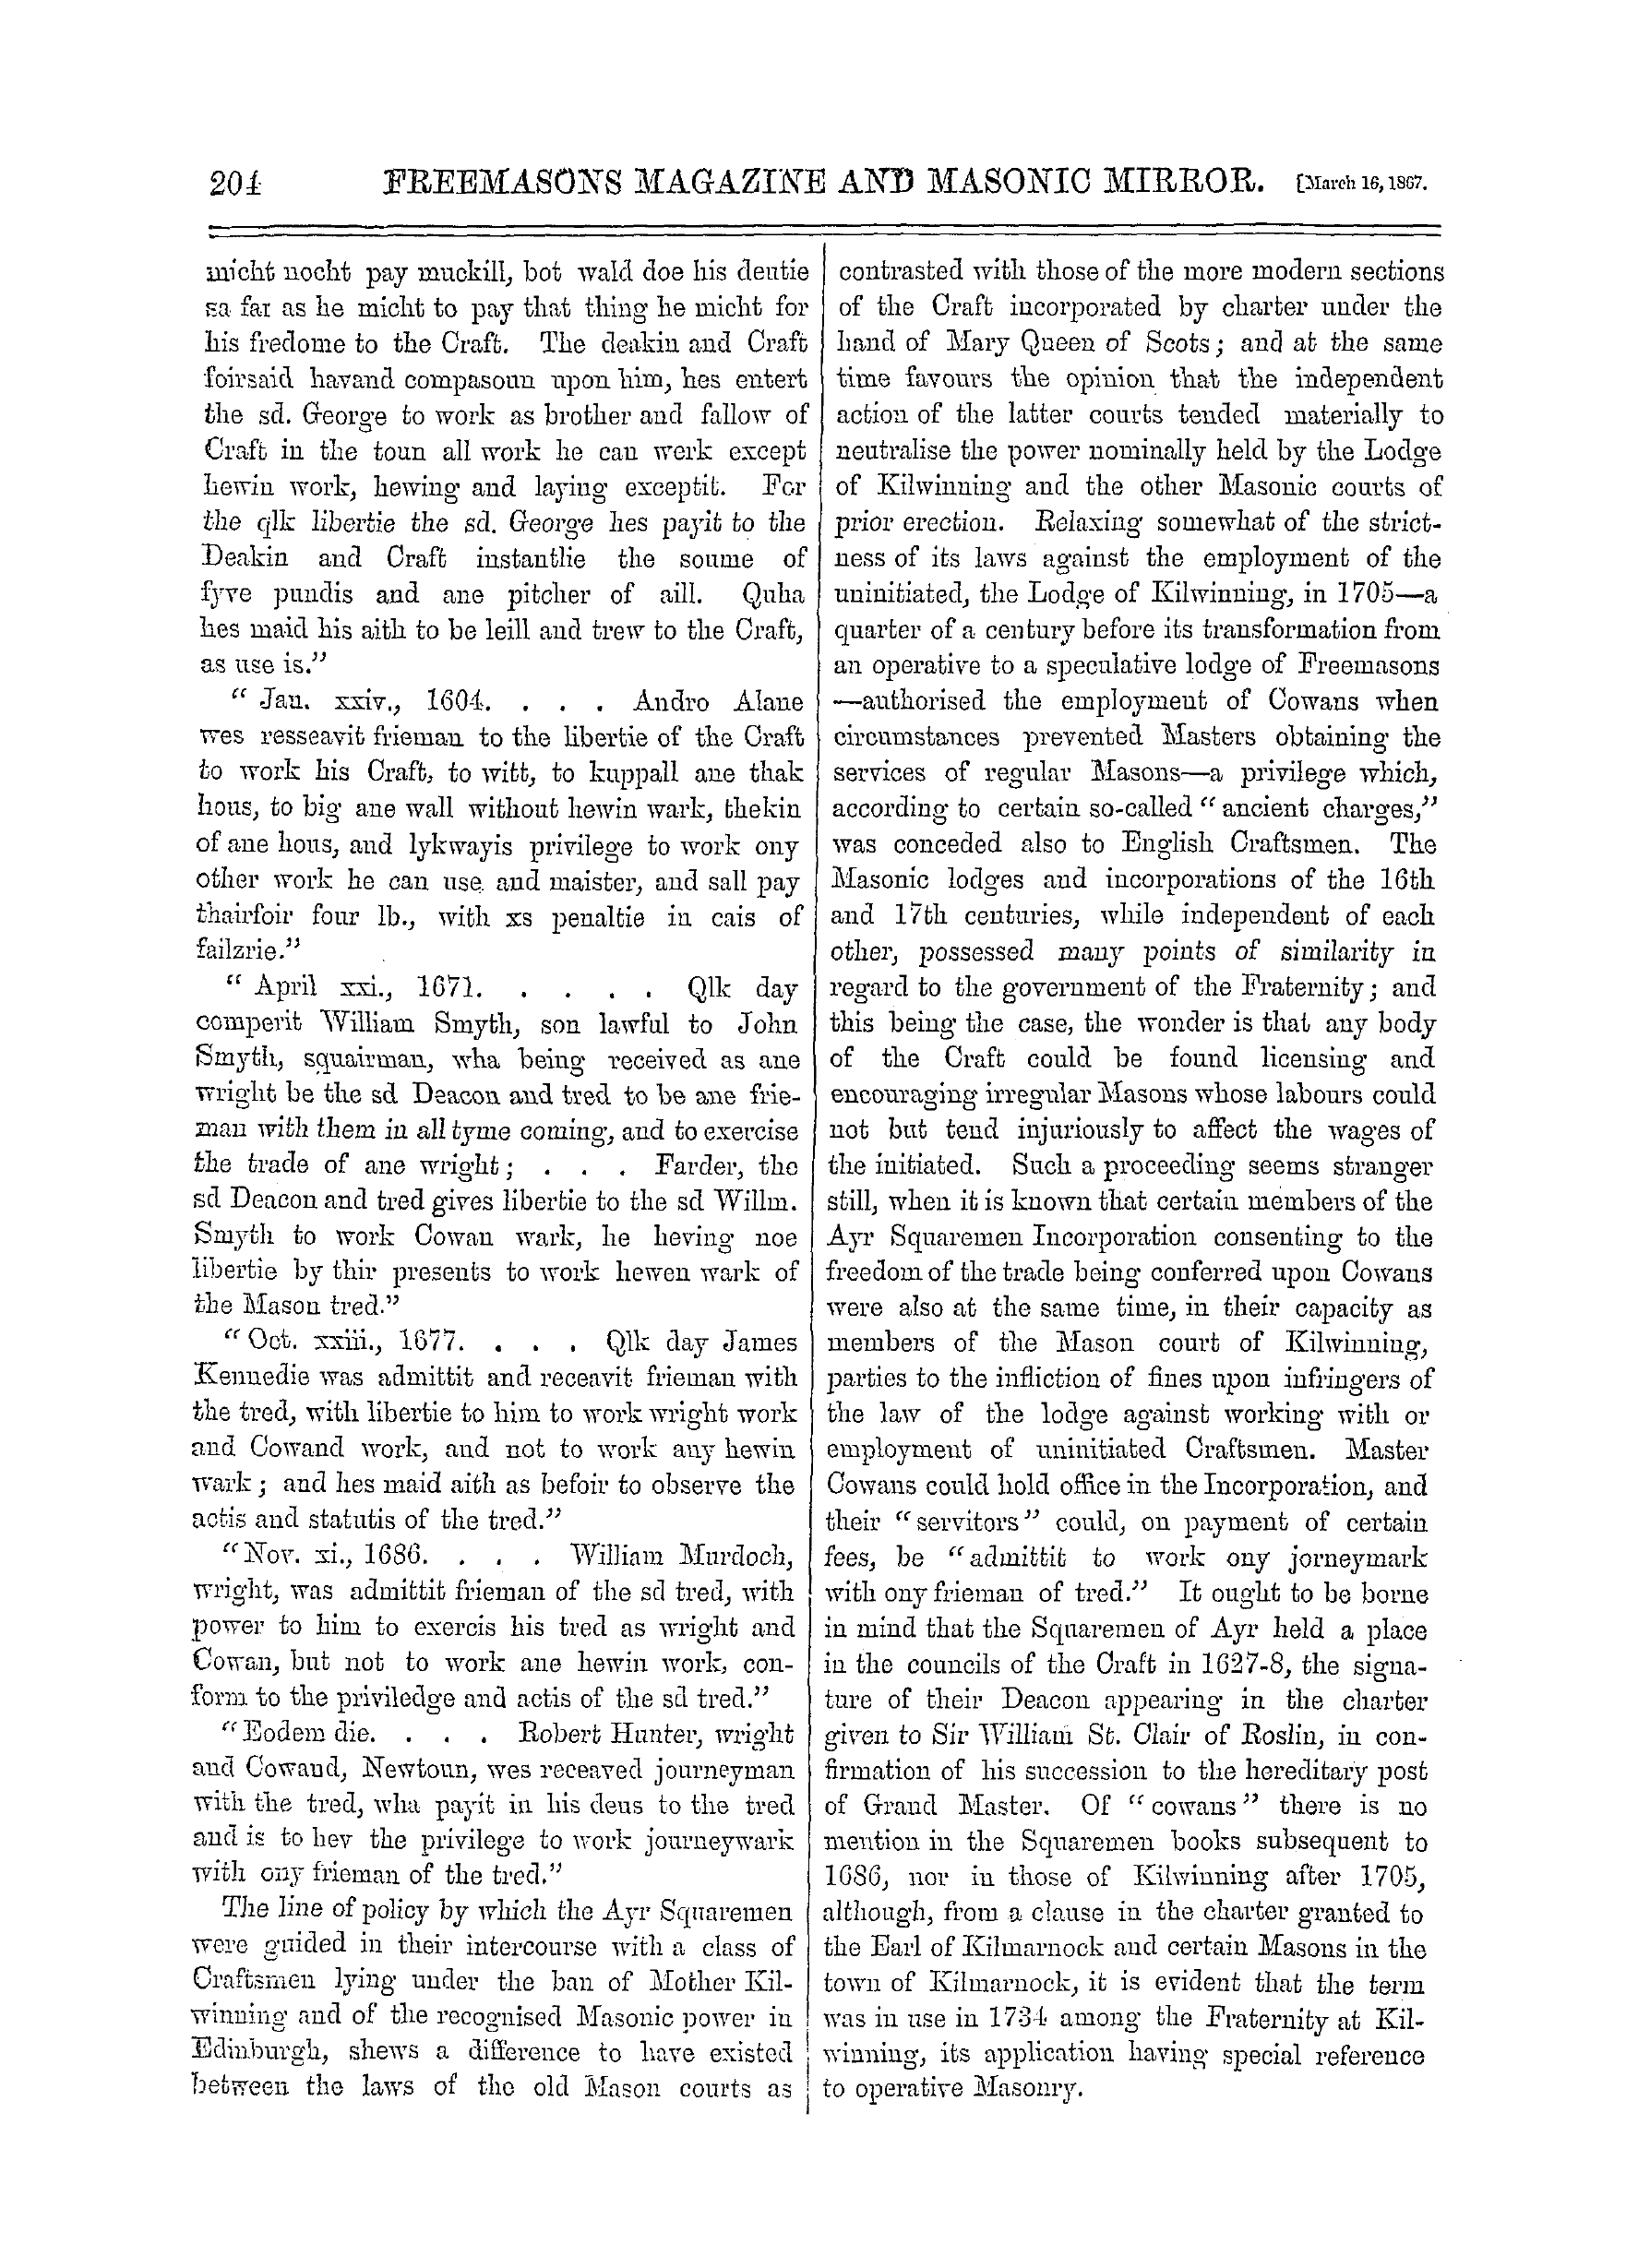 The Freemasons' Monthly Magazine: 1867-03-16: 4